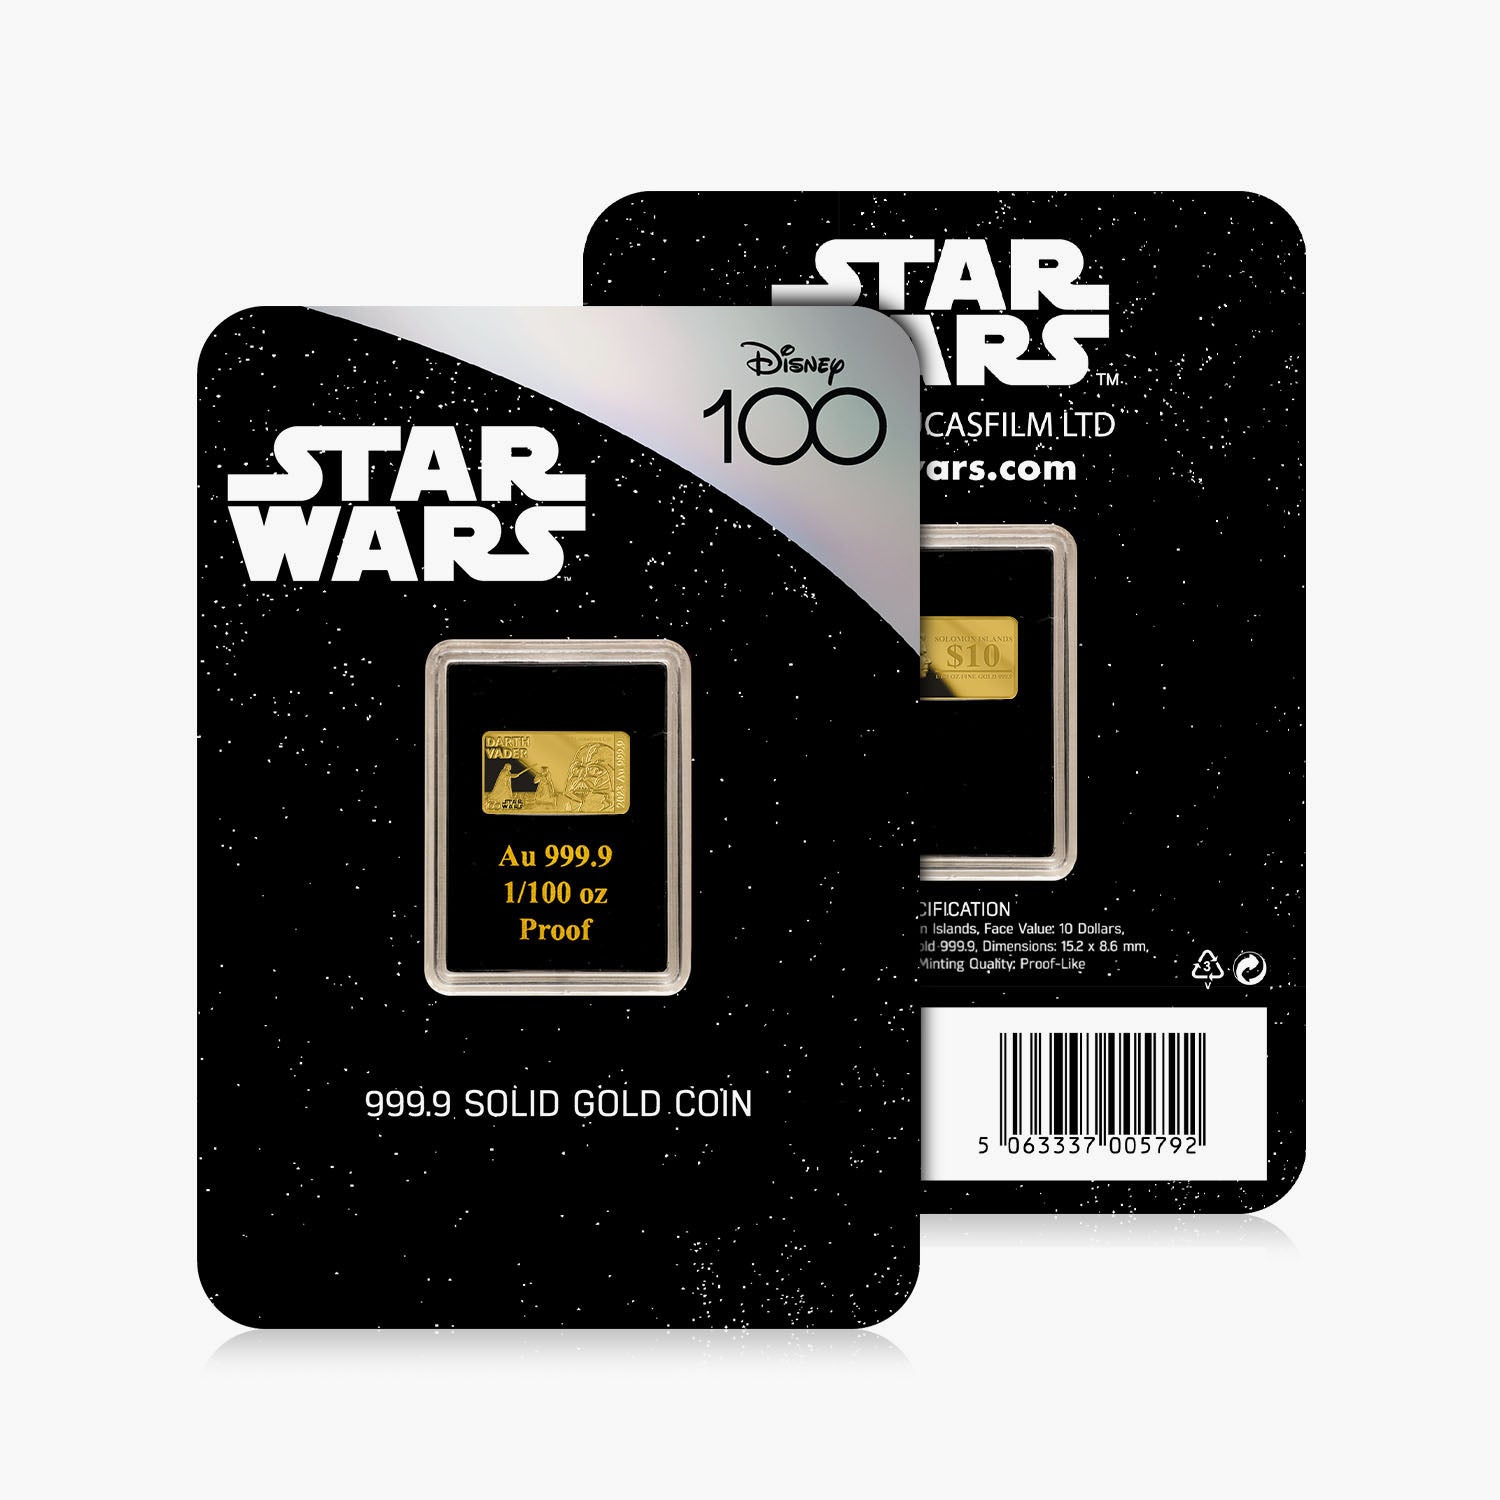 Star Wars Darth Vader Solid Gold Bar